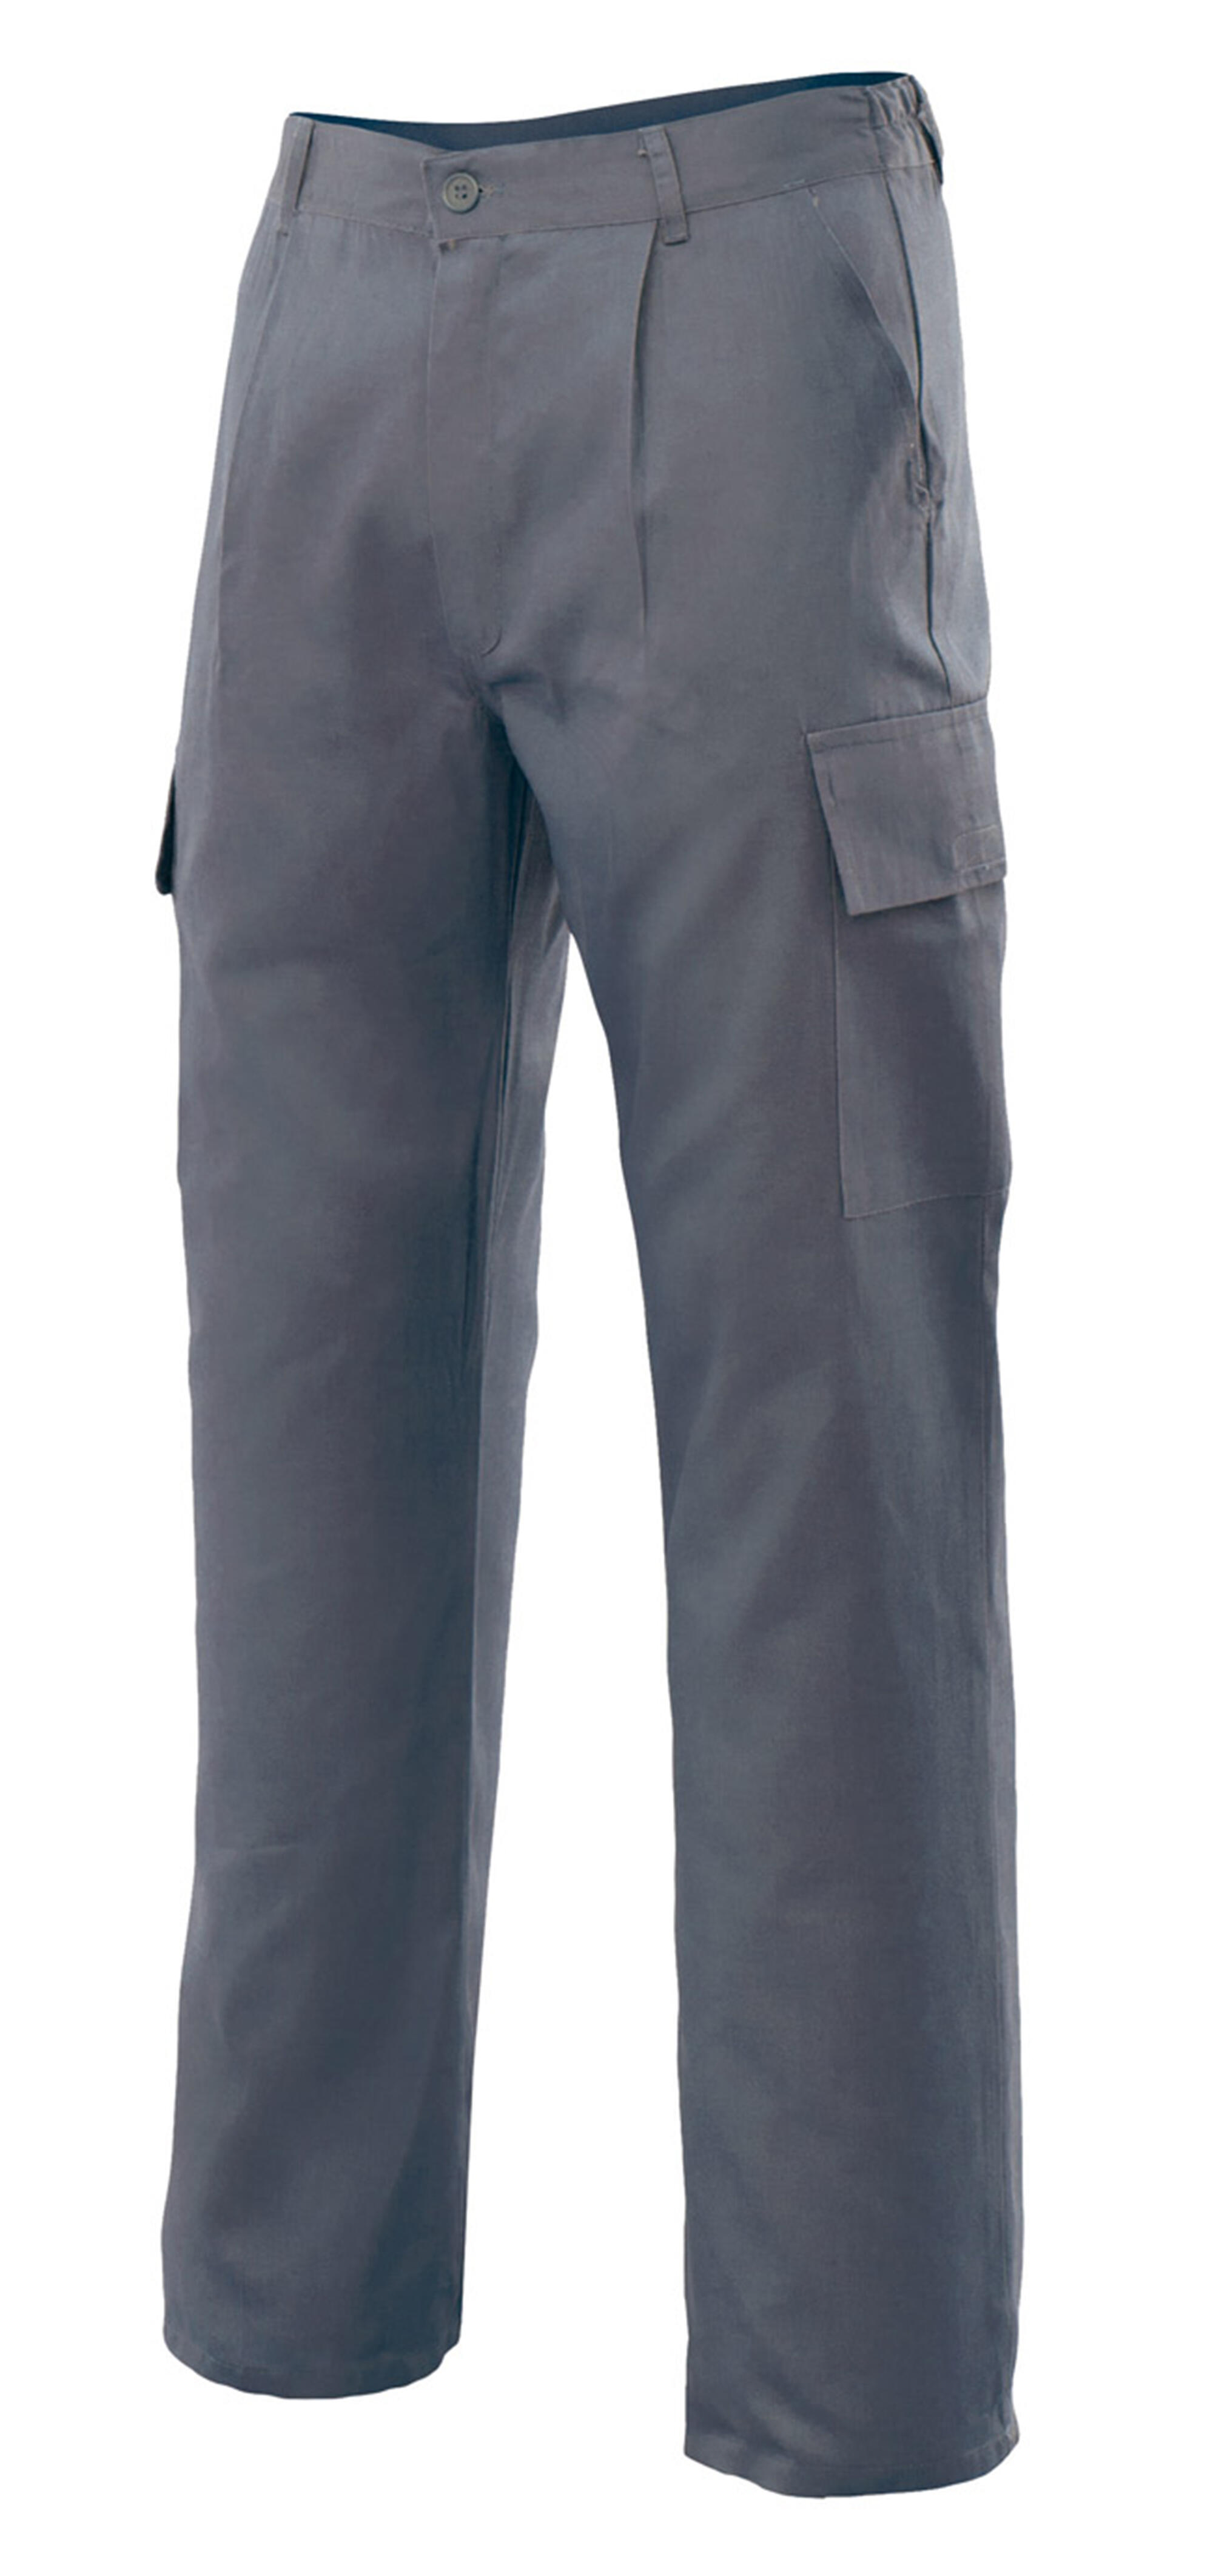 Pantalon de trabajo vertice multibolsillo gris t60